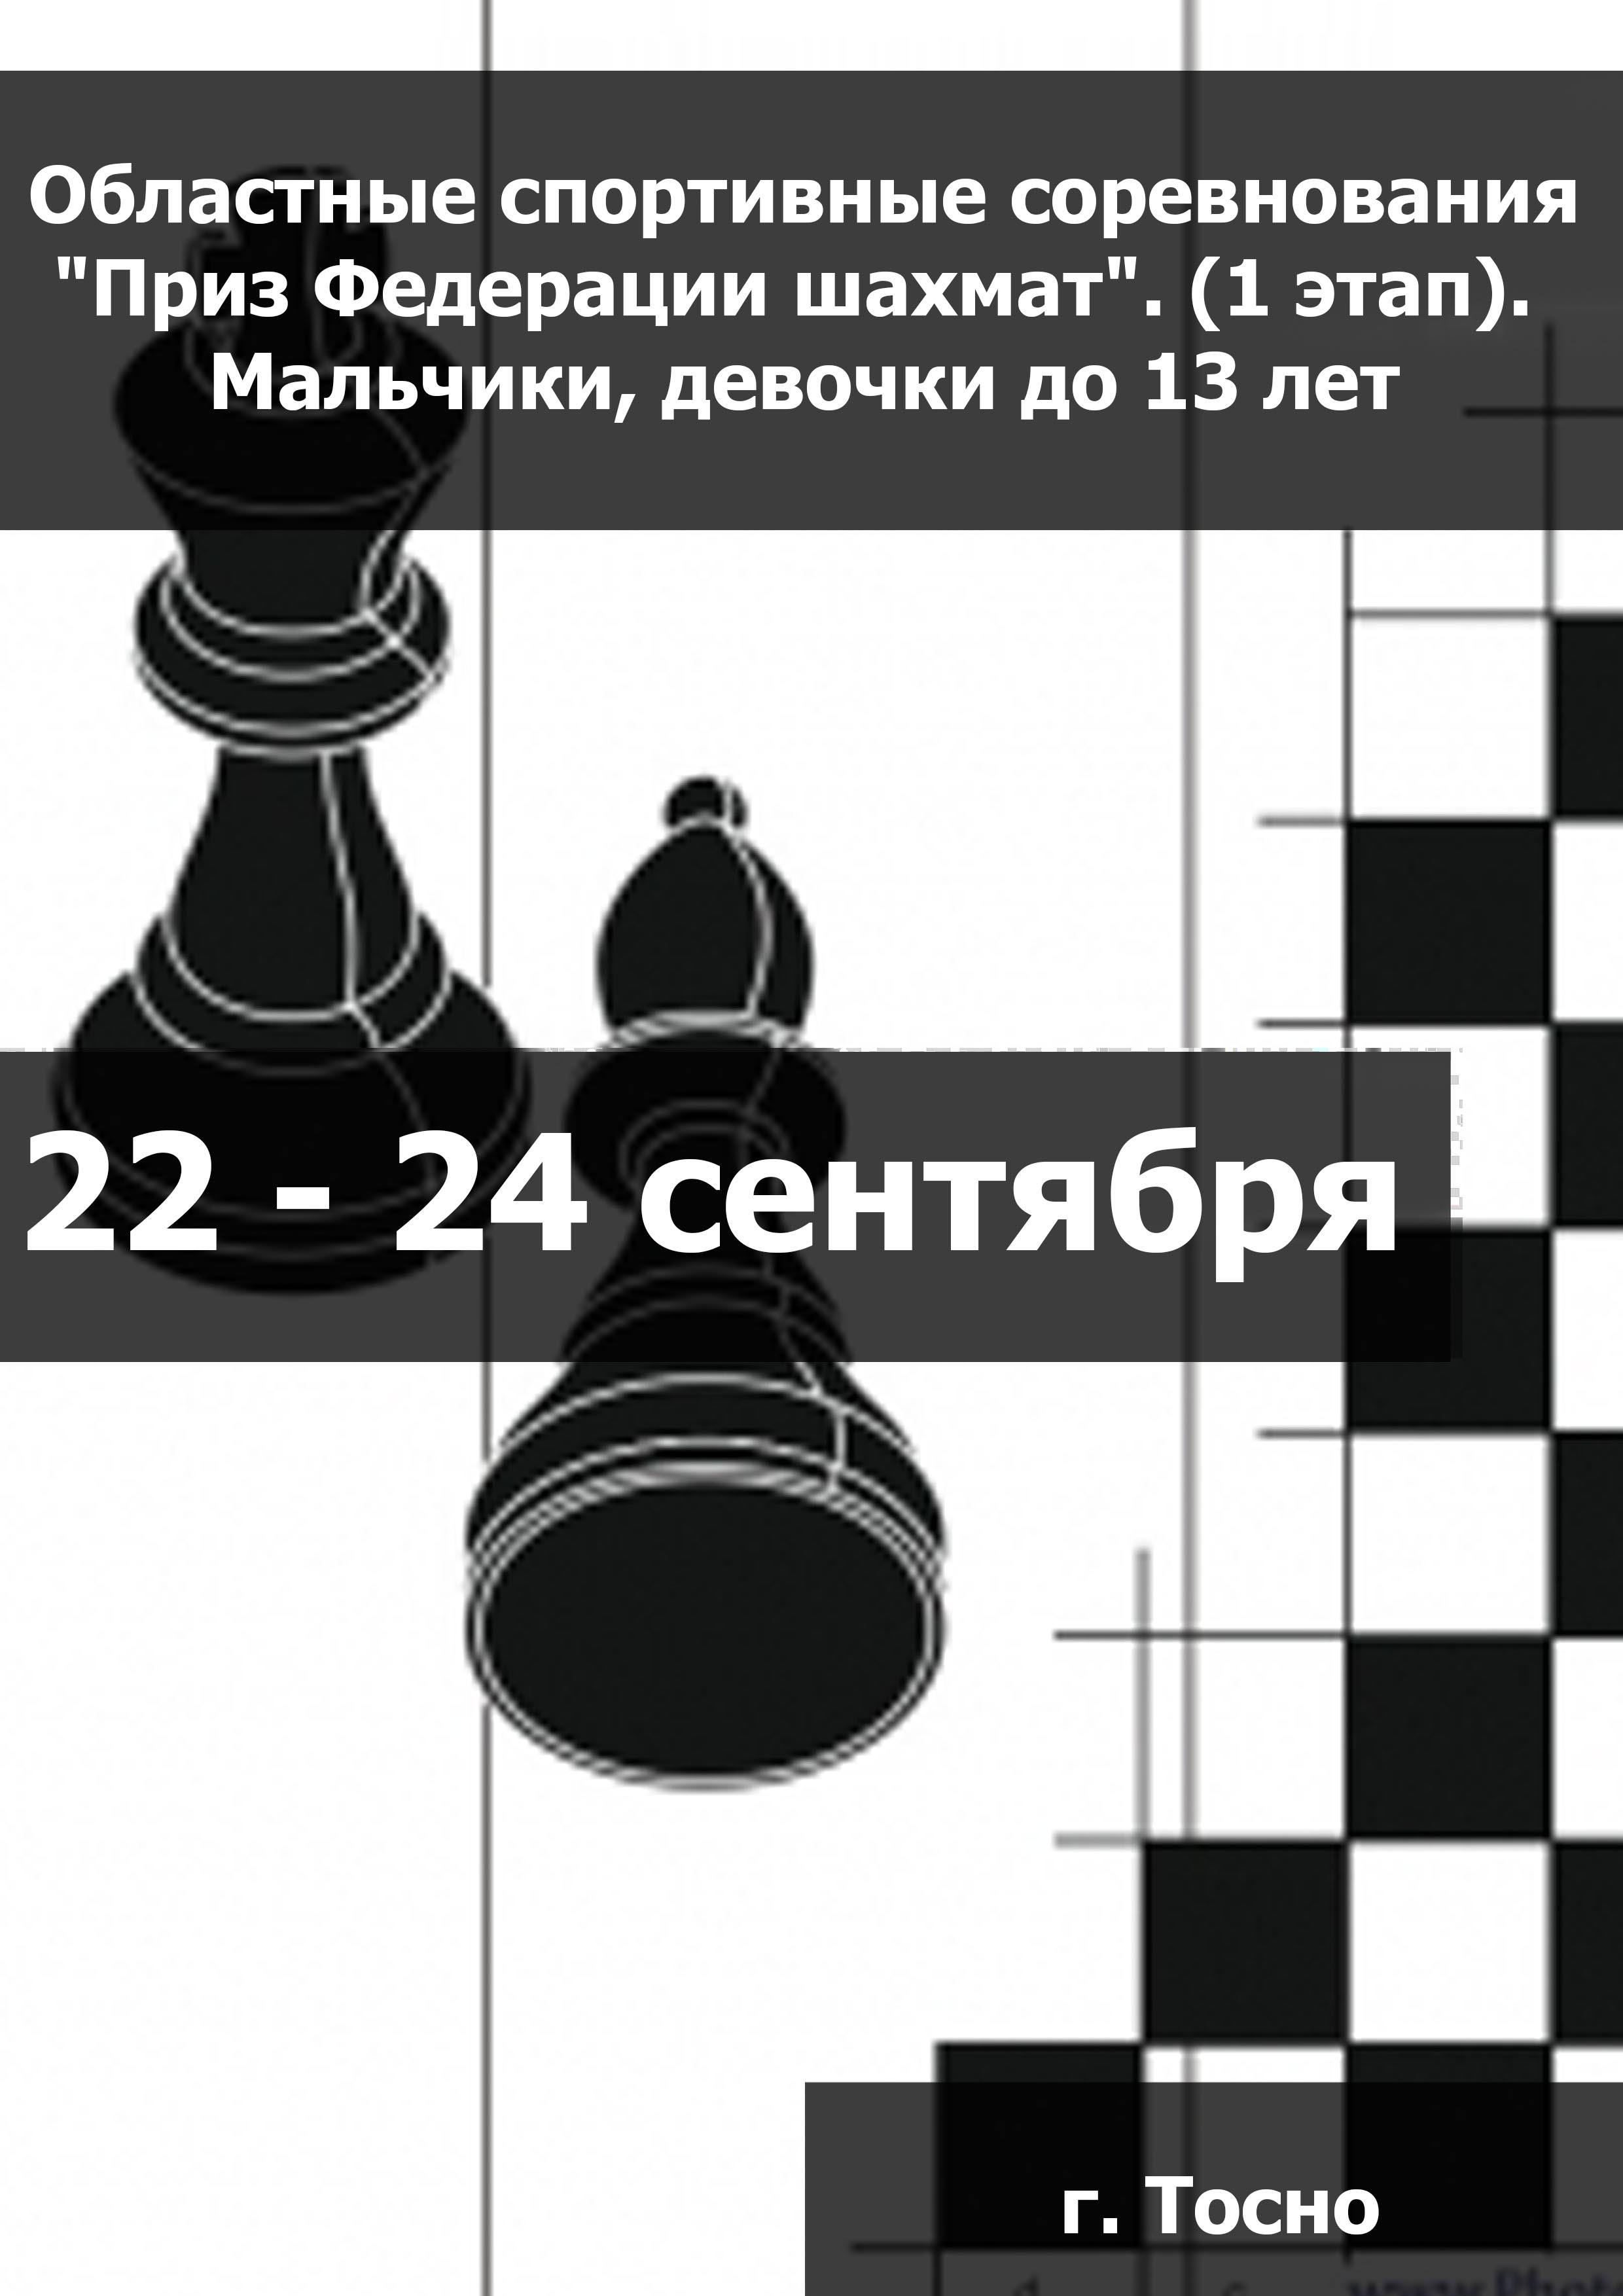 Областные спортивные соревнования "Приз Федерации шахмат". (1 этап).  Мальчики, девочки до 13 лет  22  september
 2023  år
 